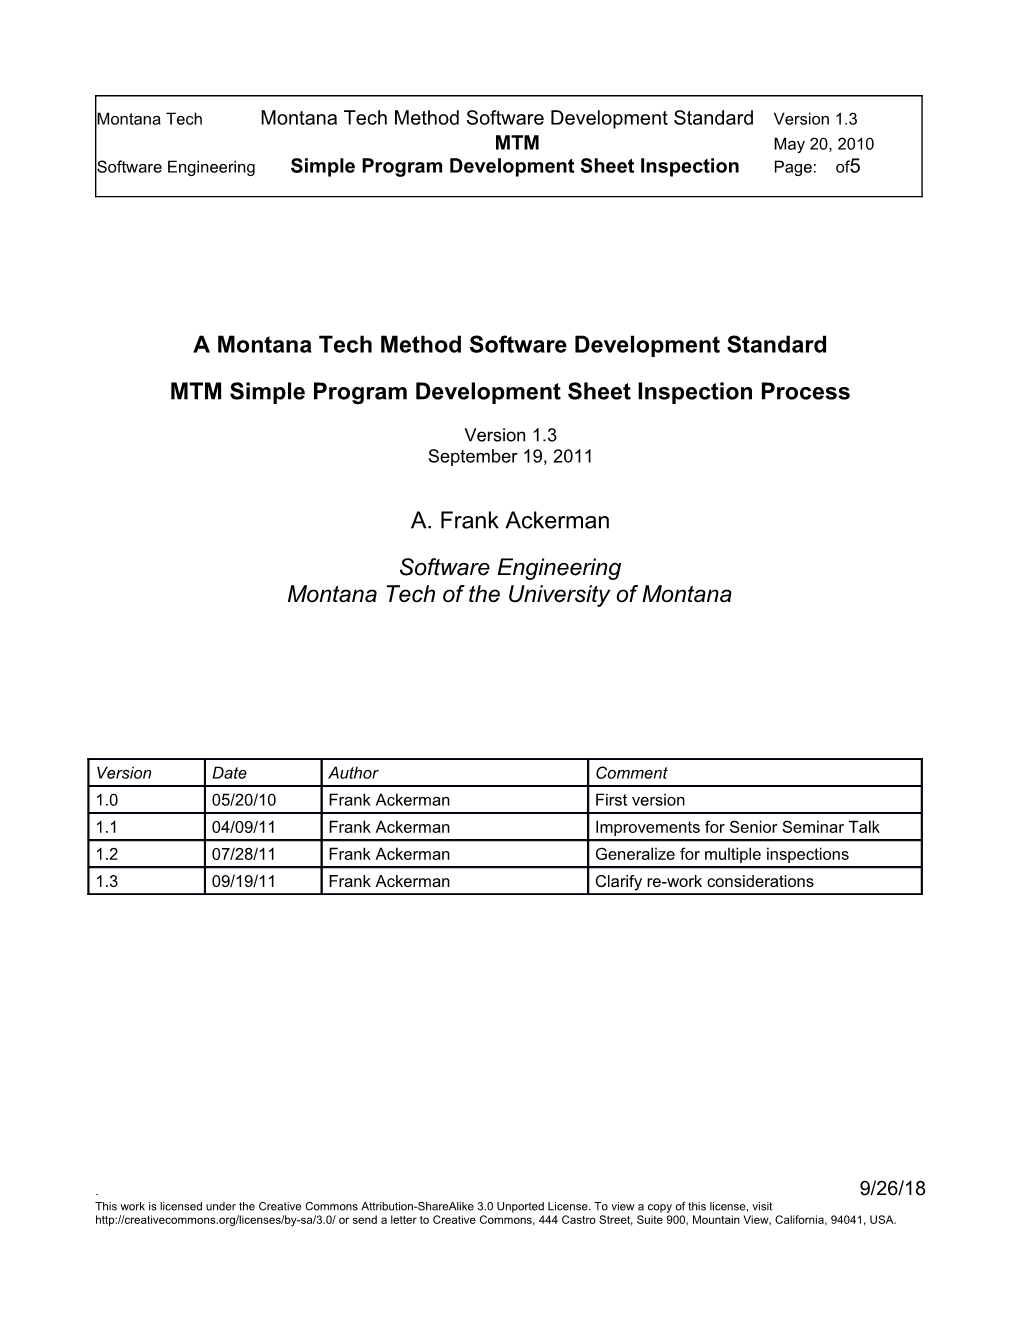 A Montana Tech Method Software Development Standard